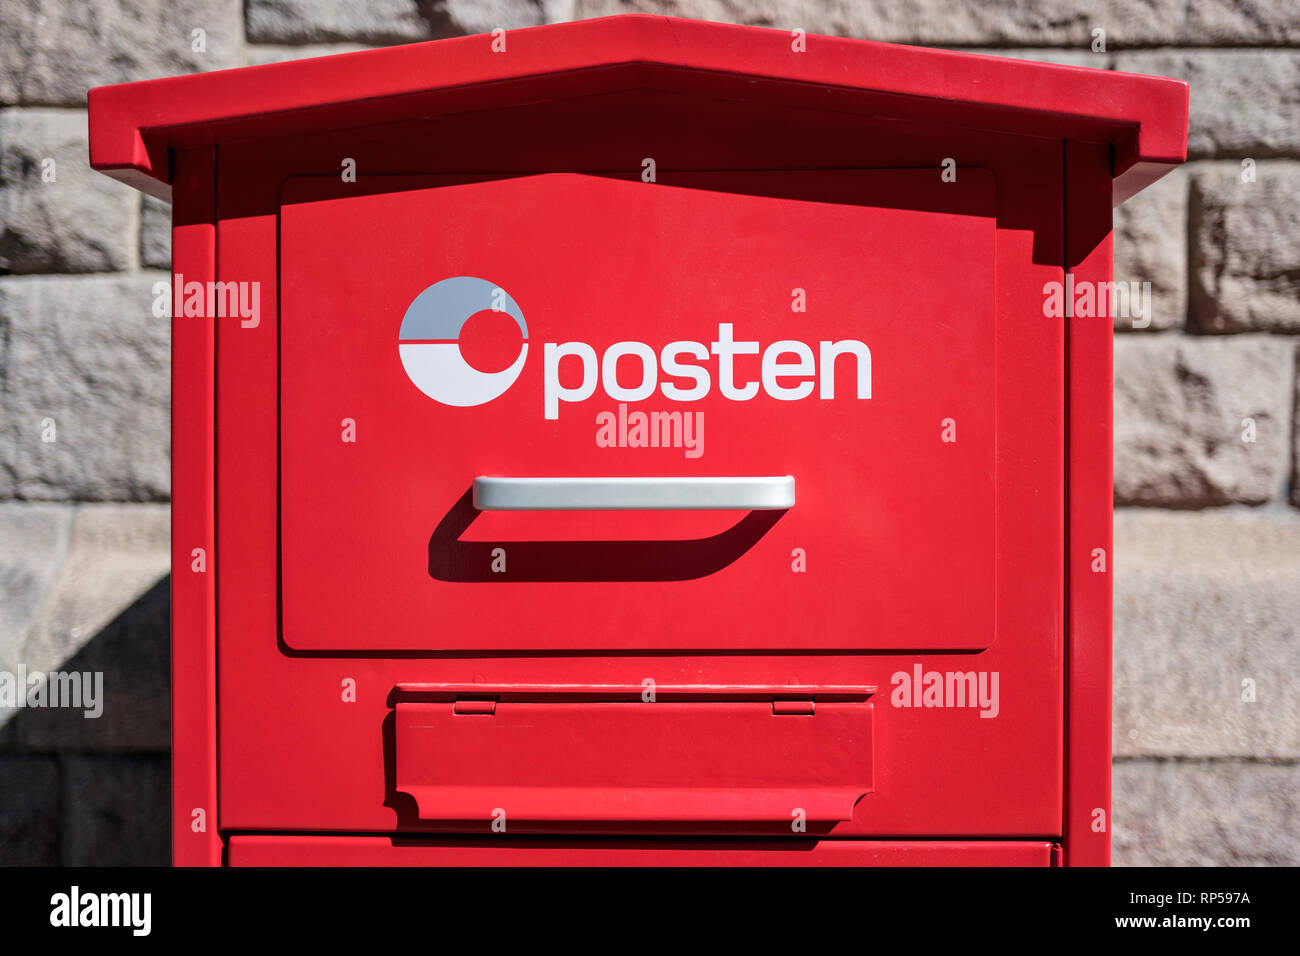 Posten Boîte aux lettres. Posten Norge est le service postal norvégien. La société est détenue par le Ministère norvégien des transports et des communications. Banque D'Images